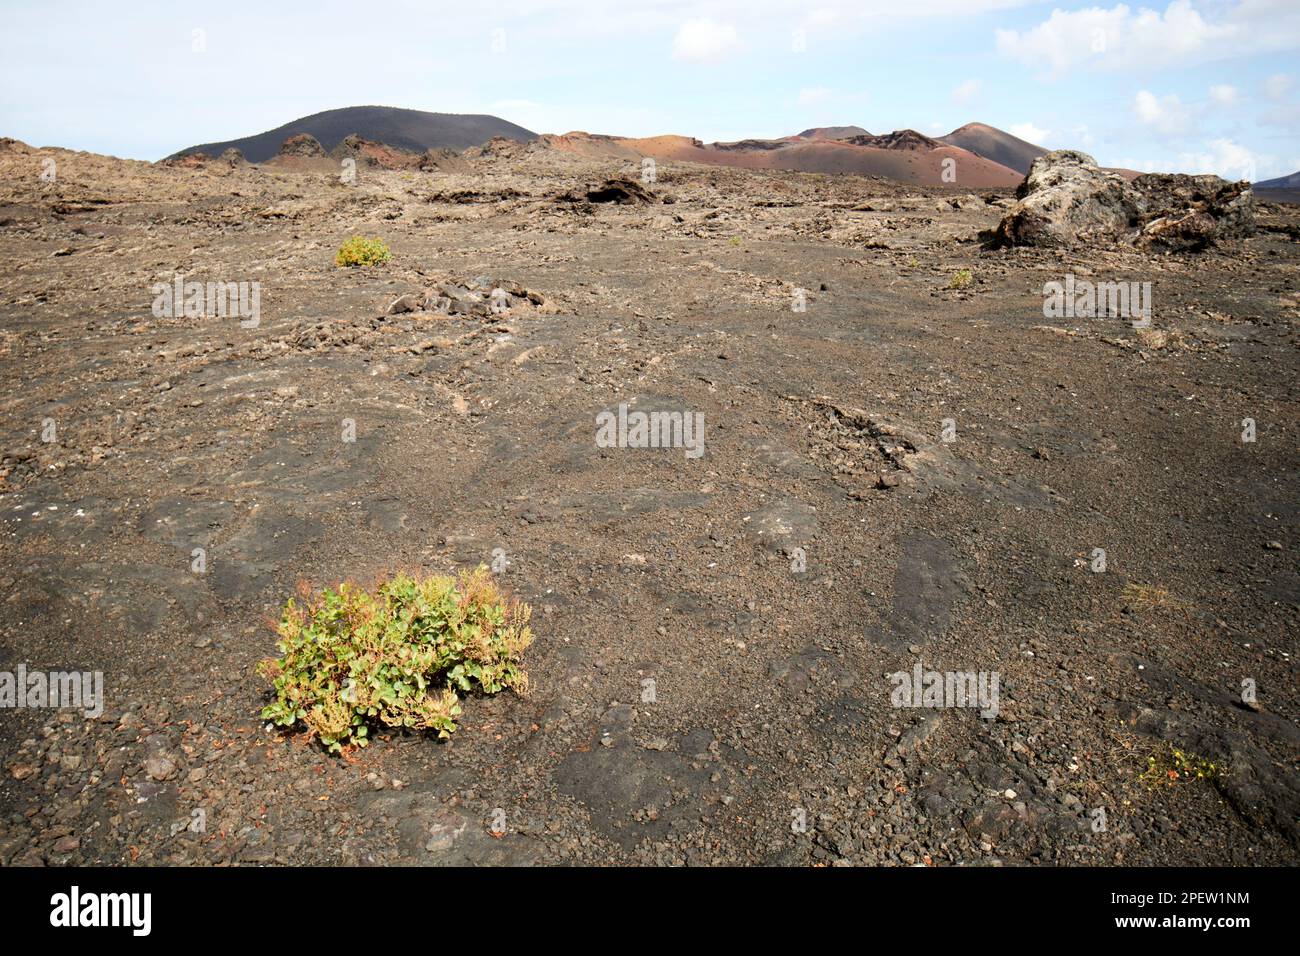 Vue sur le champ de lave et la végétation en direction de montanas del fuego et parque nacional de timanfaya Lanzarote, îles Canaries, Espagne Banque D'Images